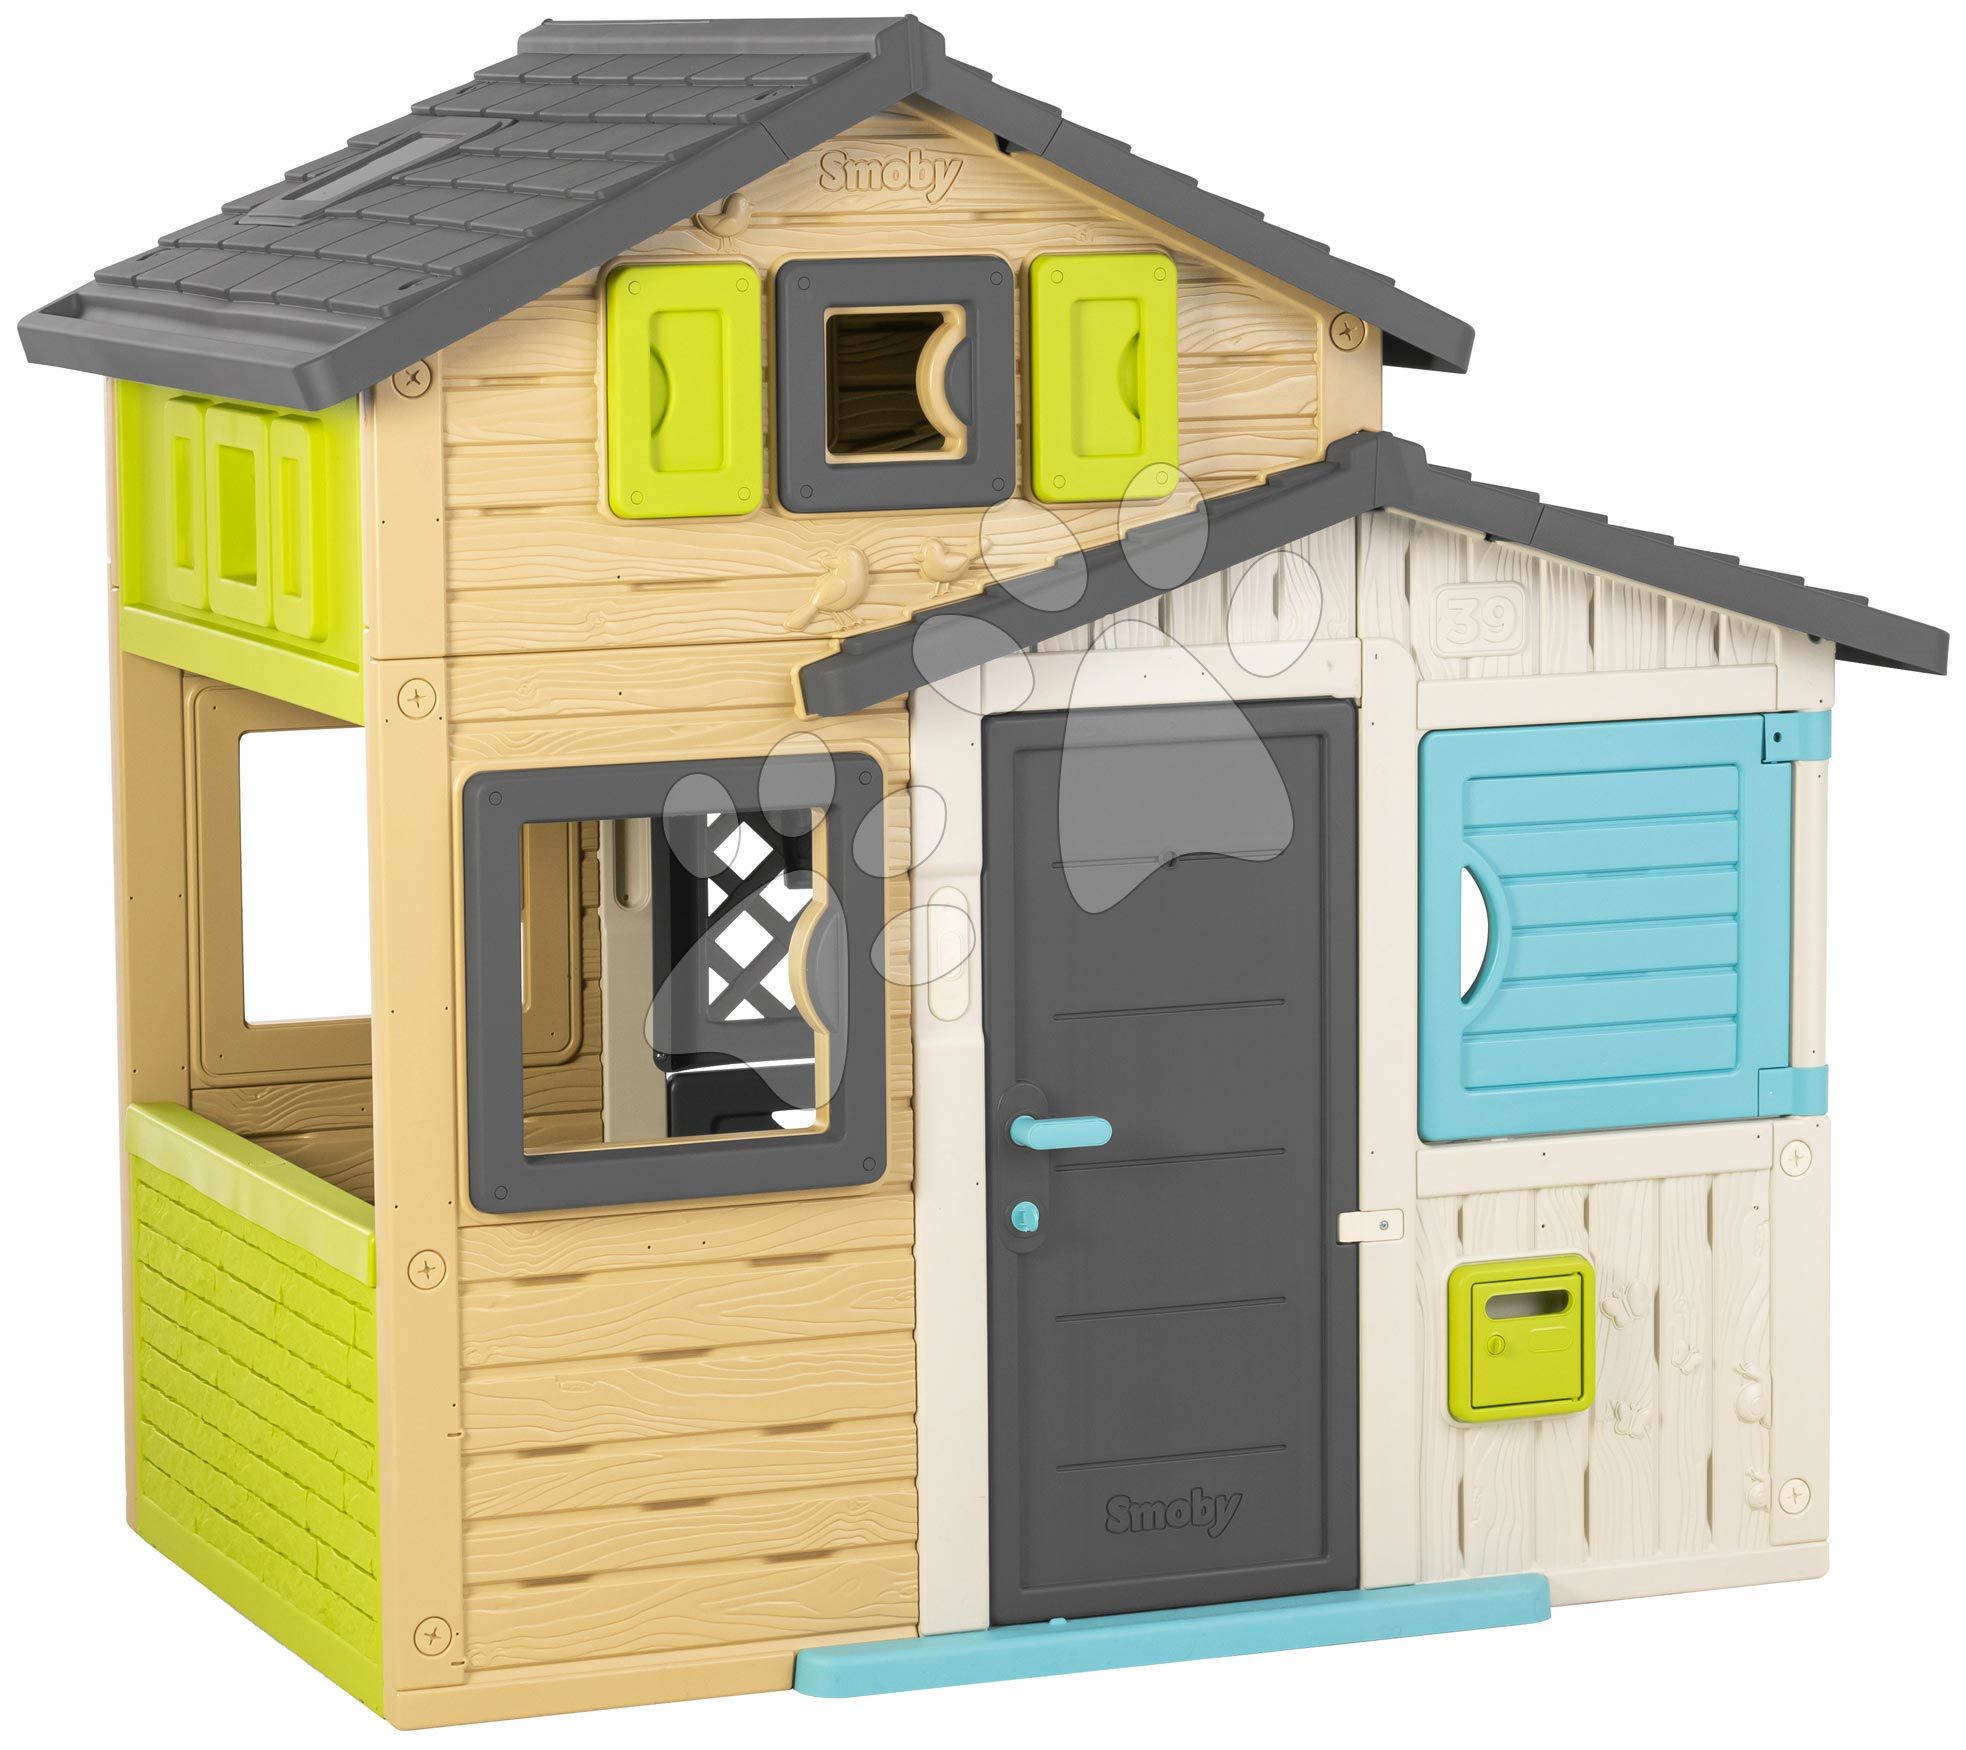 Kućice za djecu - Kućica Prijatelja elegantnih boja Friends House Evo Playhouse Smoby s nadogradnjom 2 vrata s ključem 6 prozora s UV filterom 162 cm visina